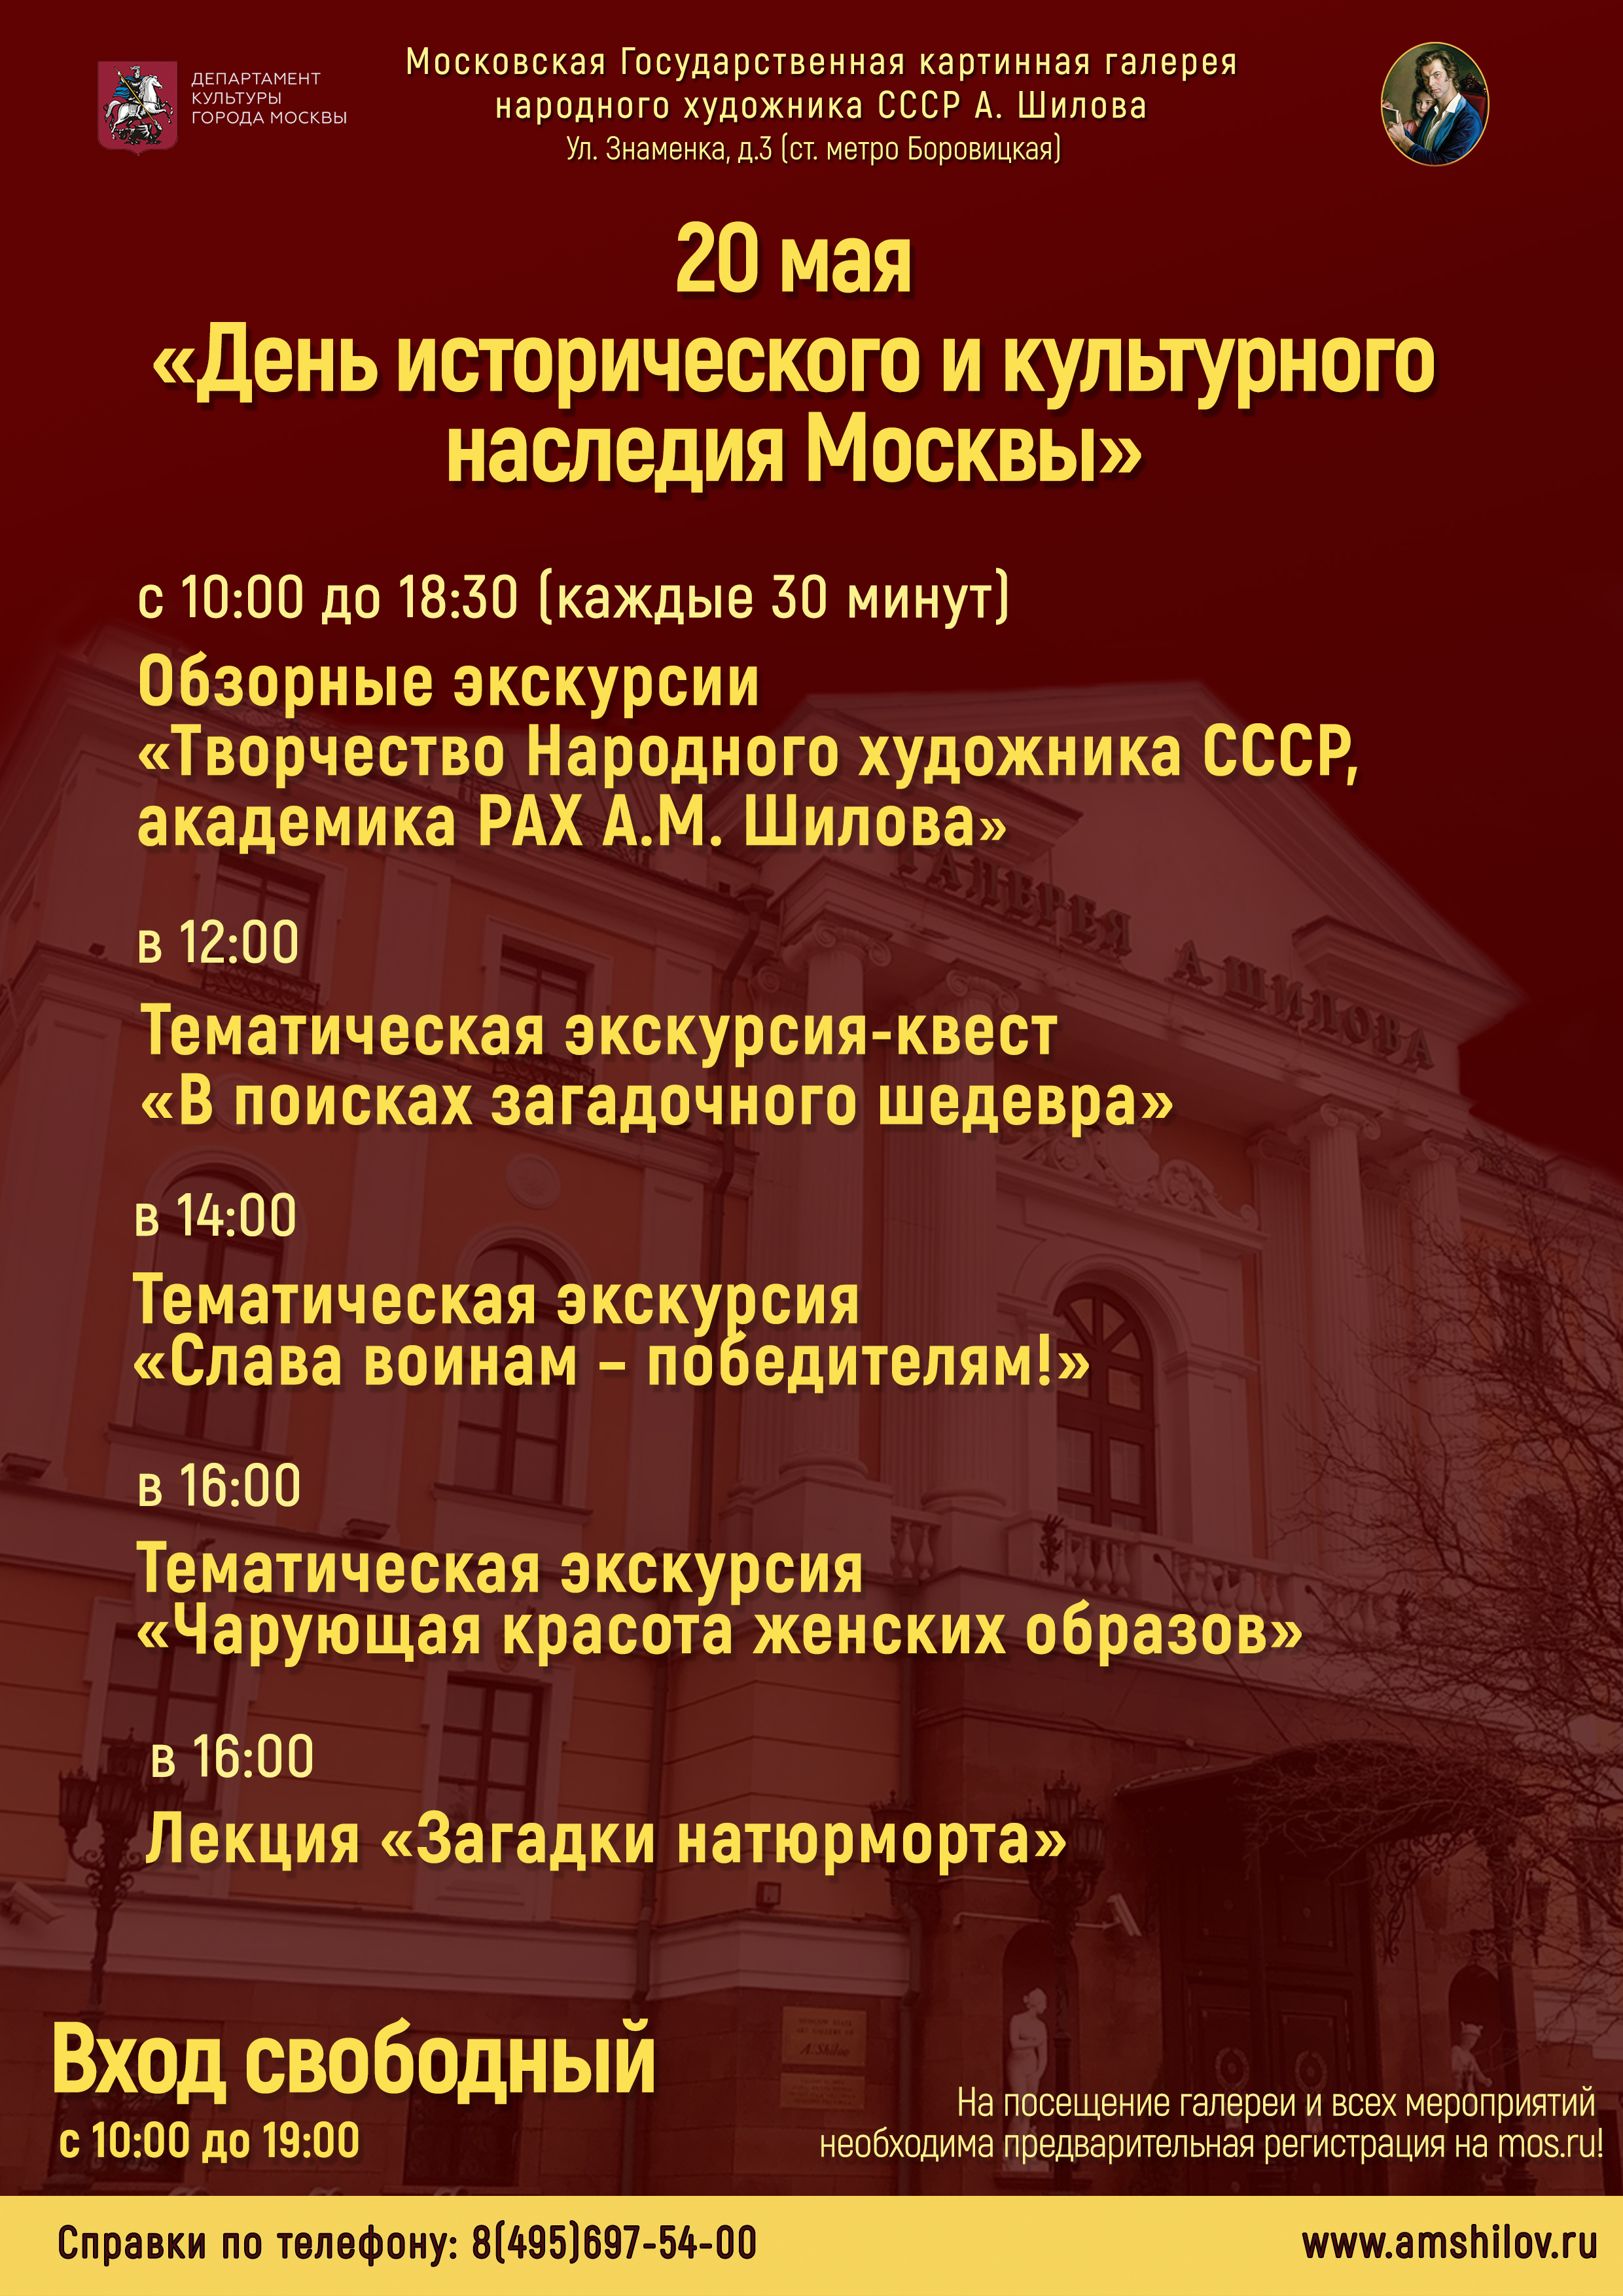 20 мая «День исторического и культурного наследия Москвы» в Галерее А. Шилова